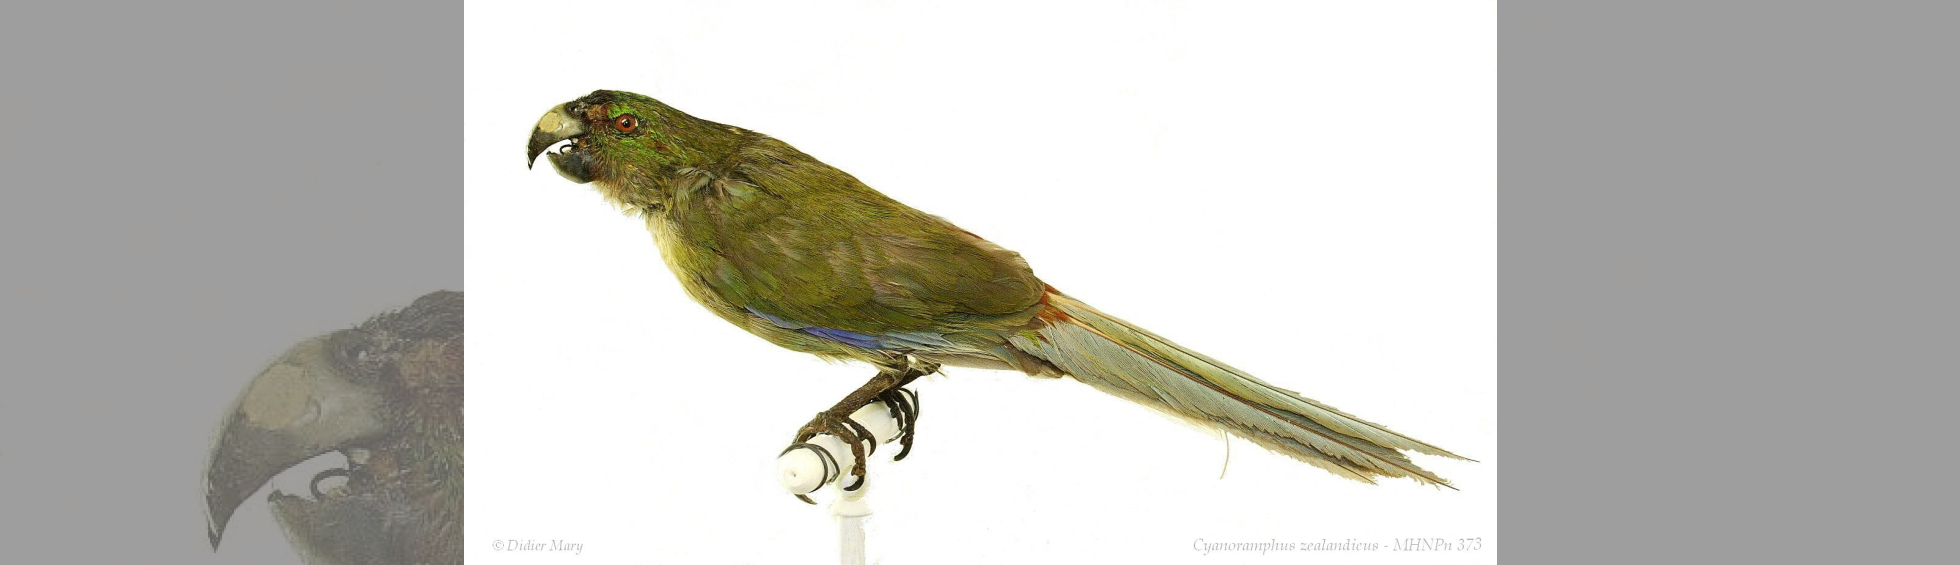 Muséum d'histoire naturelle - photo couleur de  la péruche de Tahiti